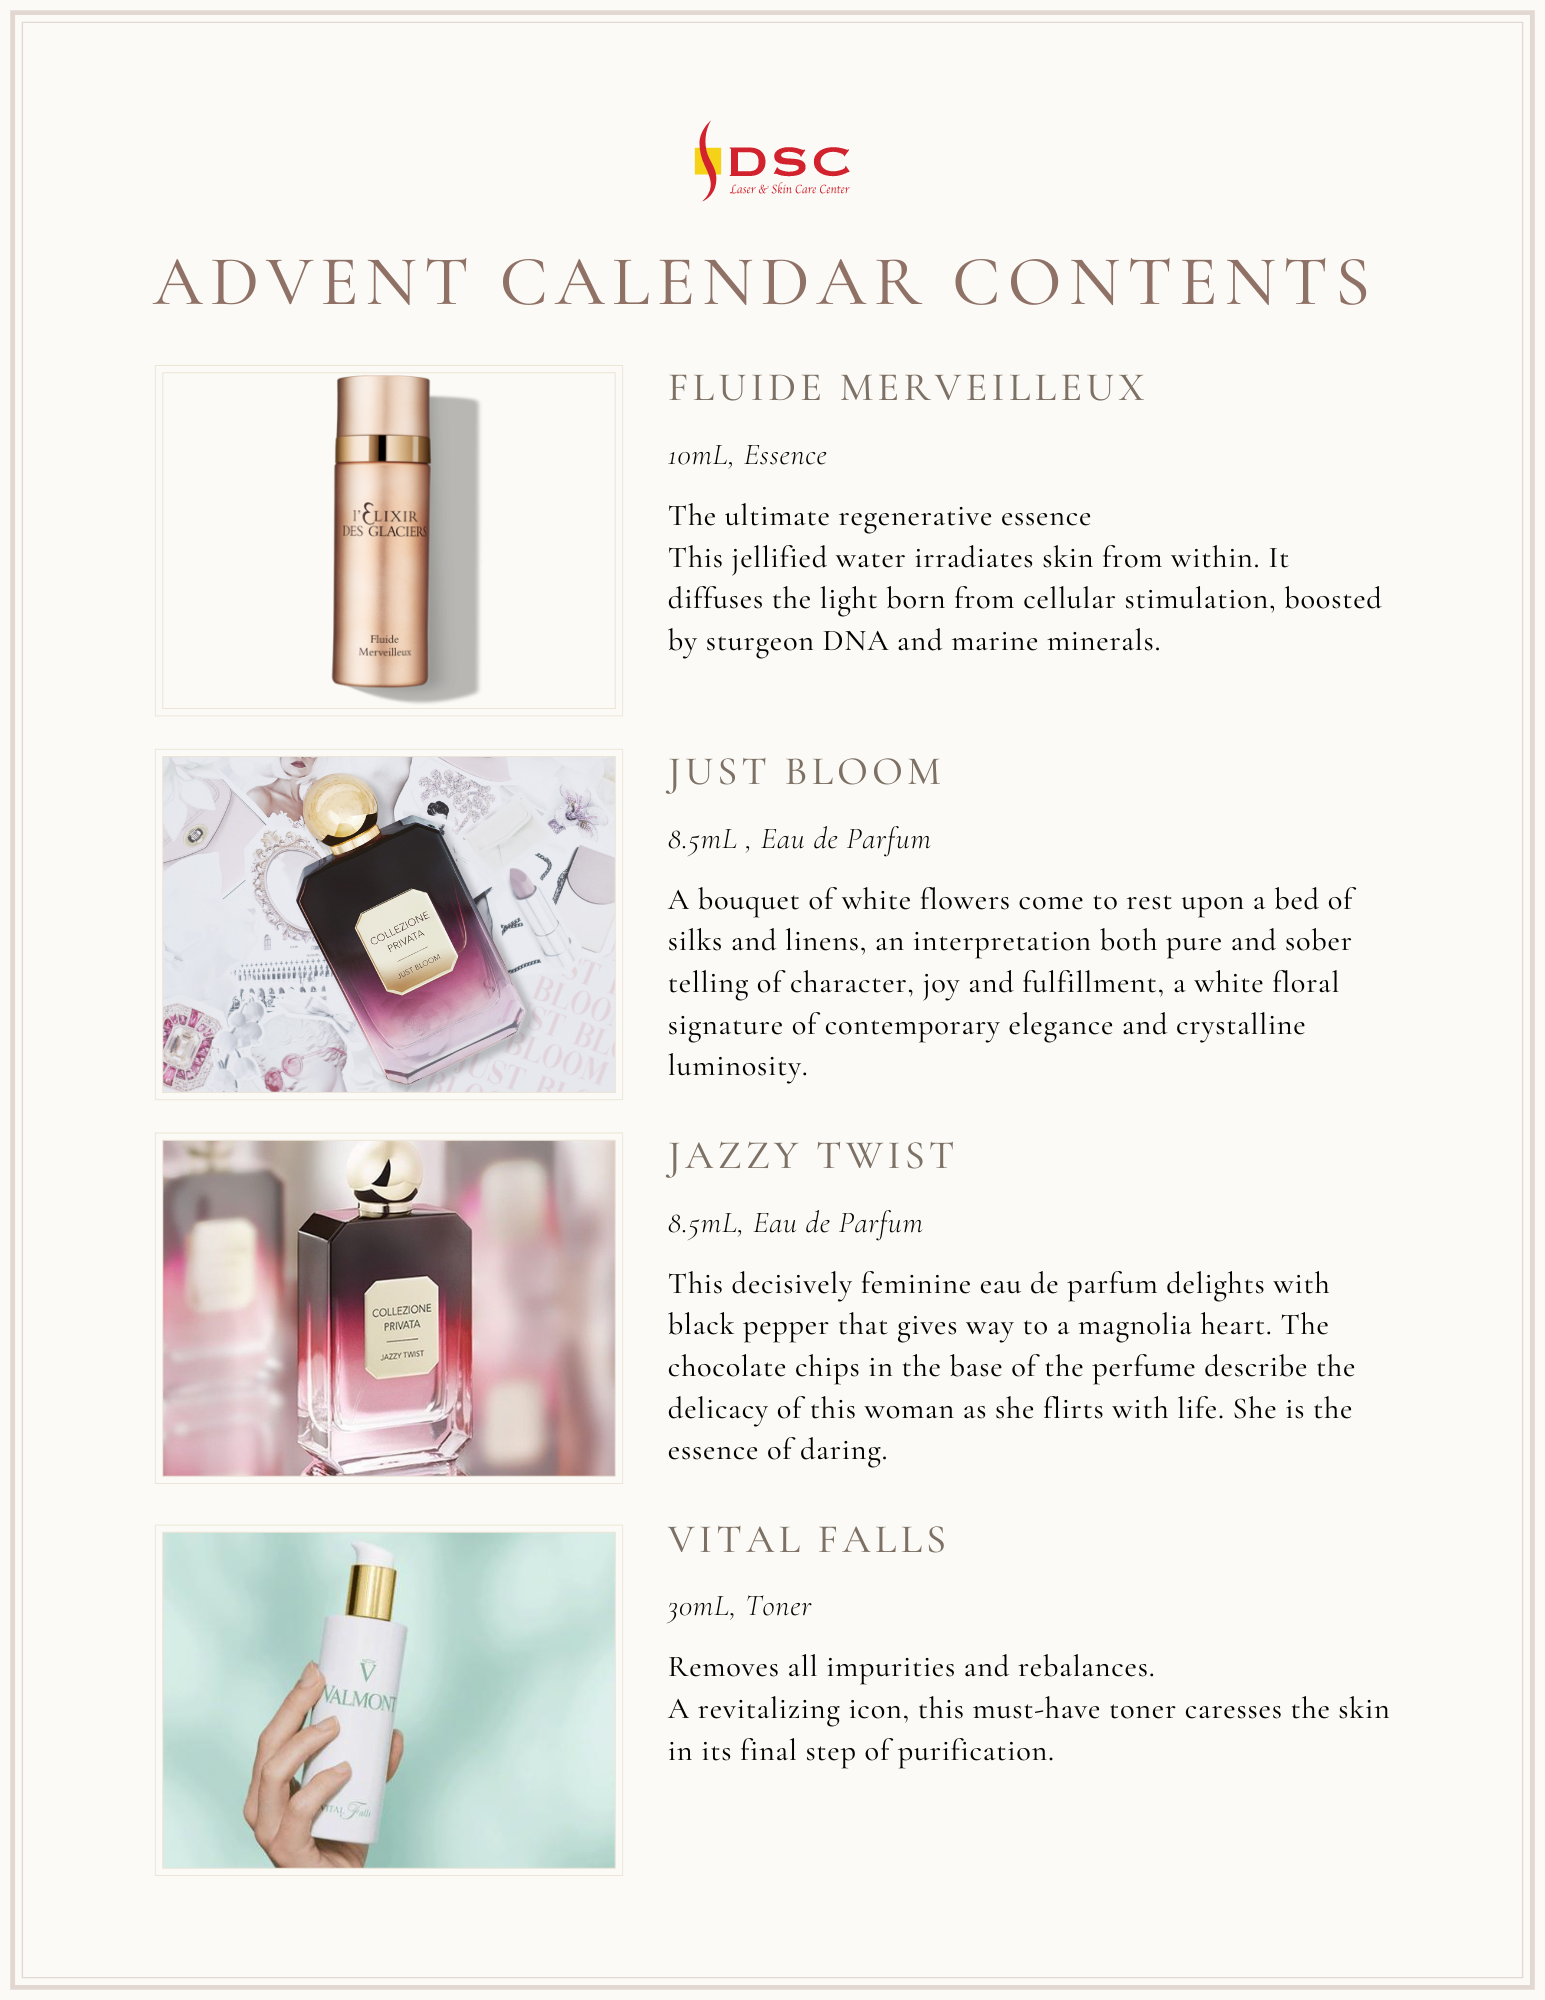 Valmont Cosmetics 2022 advent calendar contents page 2 of 3 with Fluide Merveilleux, Storie Veneziane Just Bloom Eau de Parfum, Jazzy Twist Eau de Parfum, and Valmont Vital Falls Toner